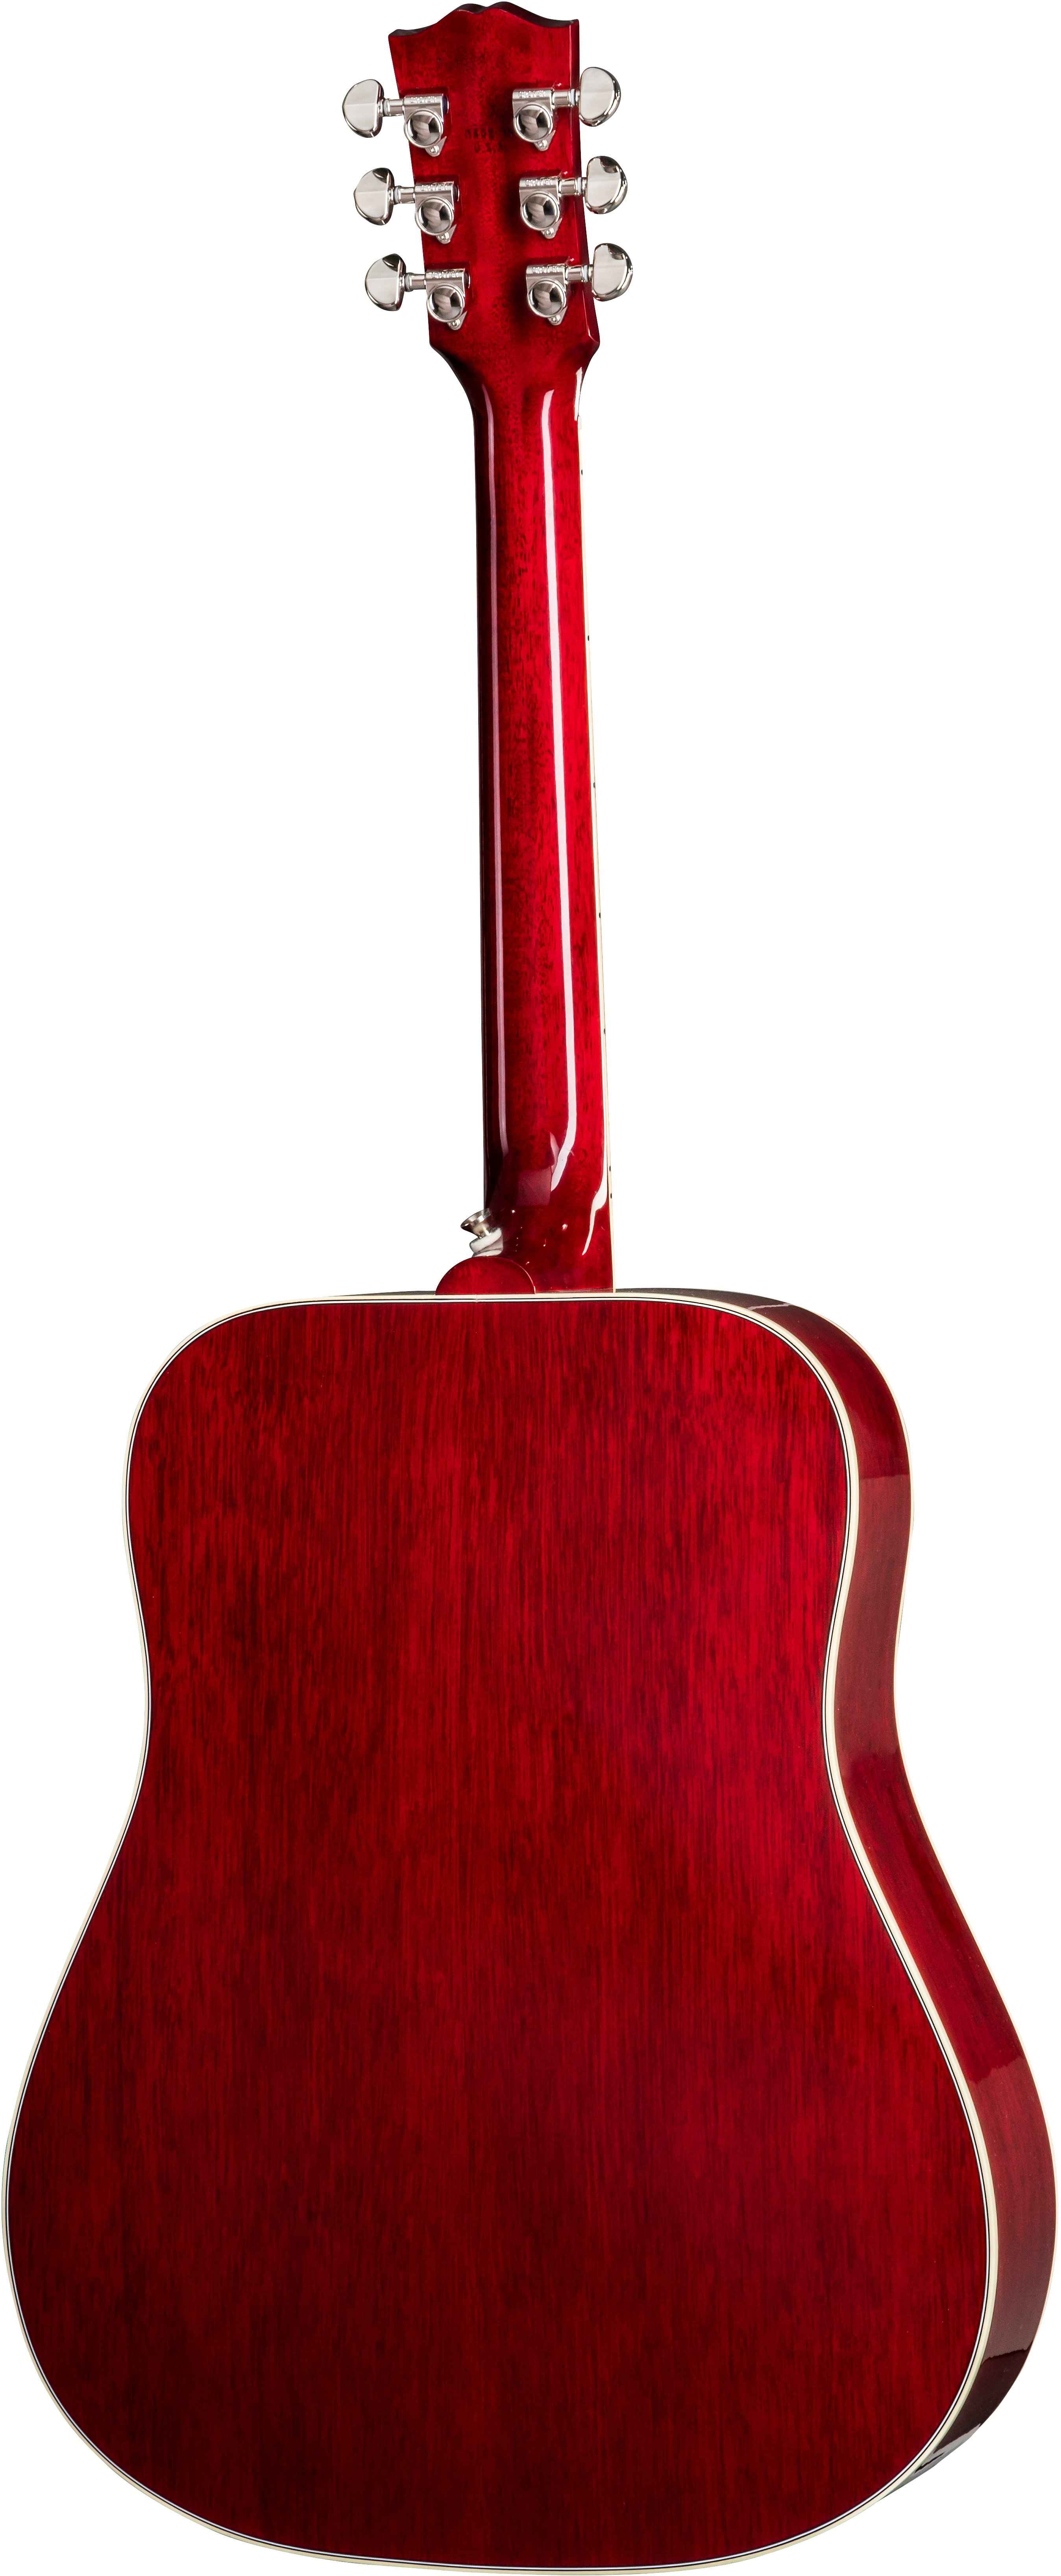 Gibson Hummingbird 2019 Dreadnought Epicea Acajou Rw - Vintage Cherry Sunburst - Guitarra acústica & electro - Variation 1